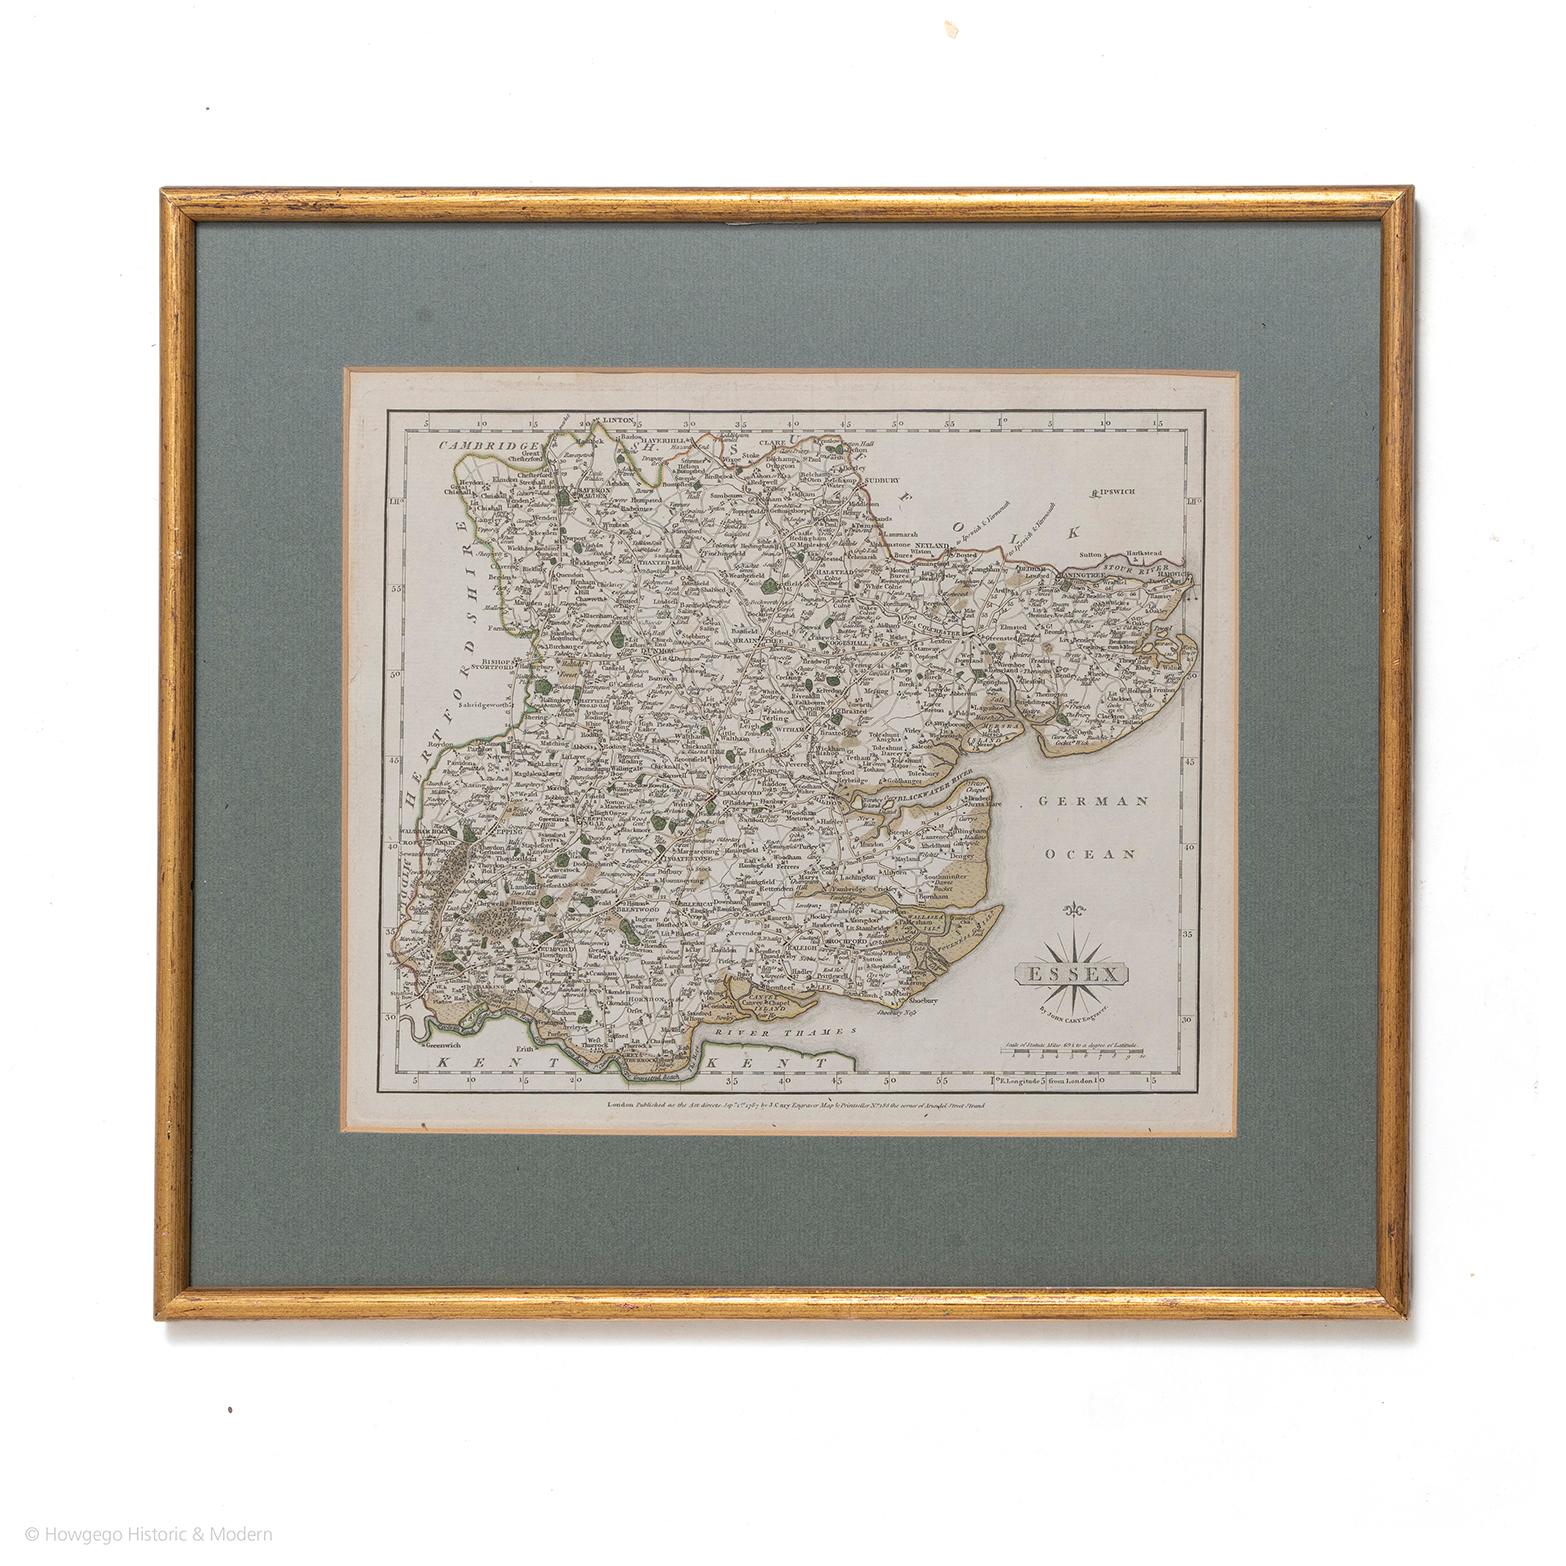 Mapa de Essex por el grabador John Cary
Londres publicado según la ley el 1 de septiembre de 1787 por J Cary Engraver Map & Printseller no 188 the corner of Arundel Street Strand
Antiguo mapa grabado en cobre con contorno original en